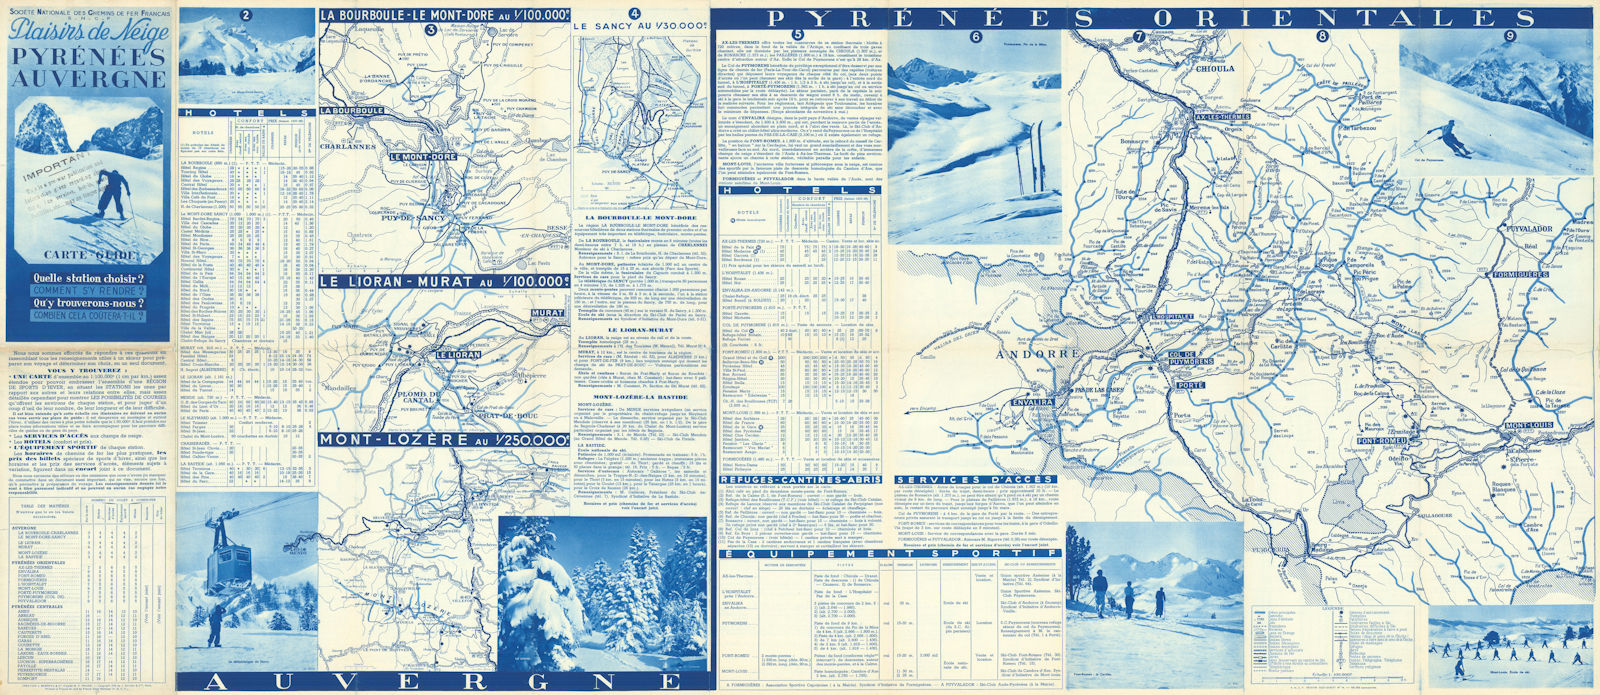 SNCF Plaisirs de Neige Pyrénées Auvergne Ski resorts map 1938 old vintage